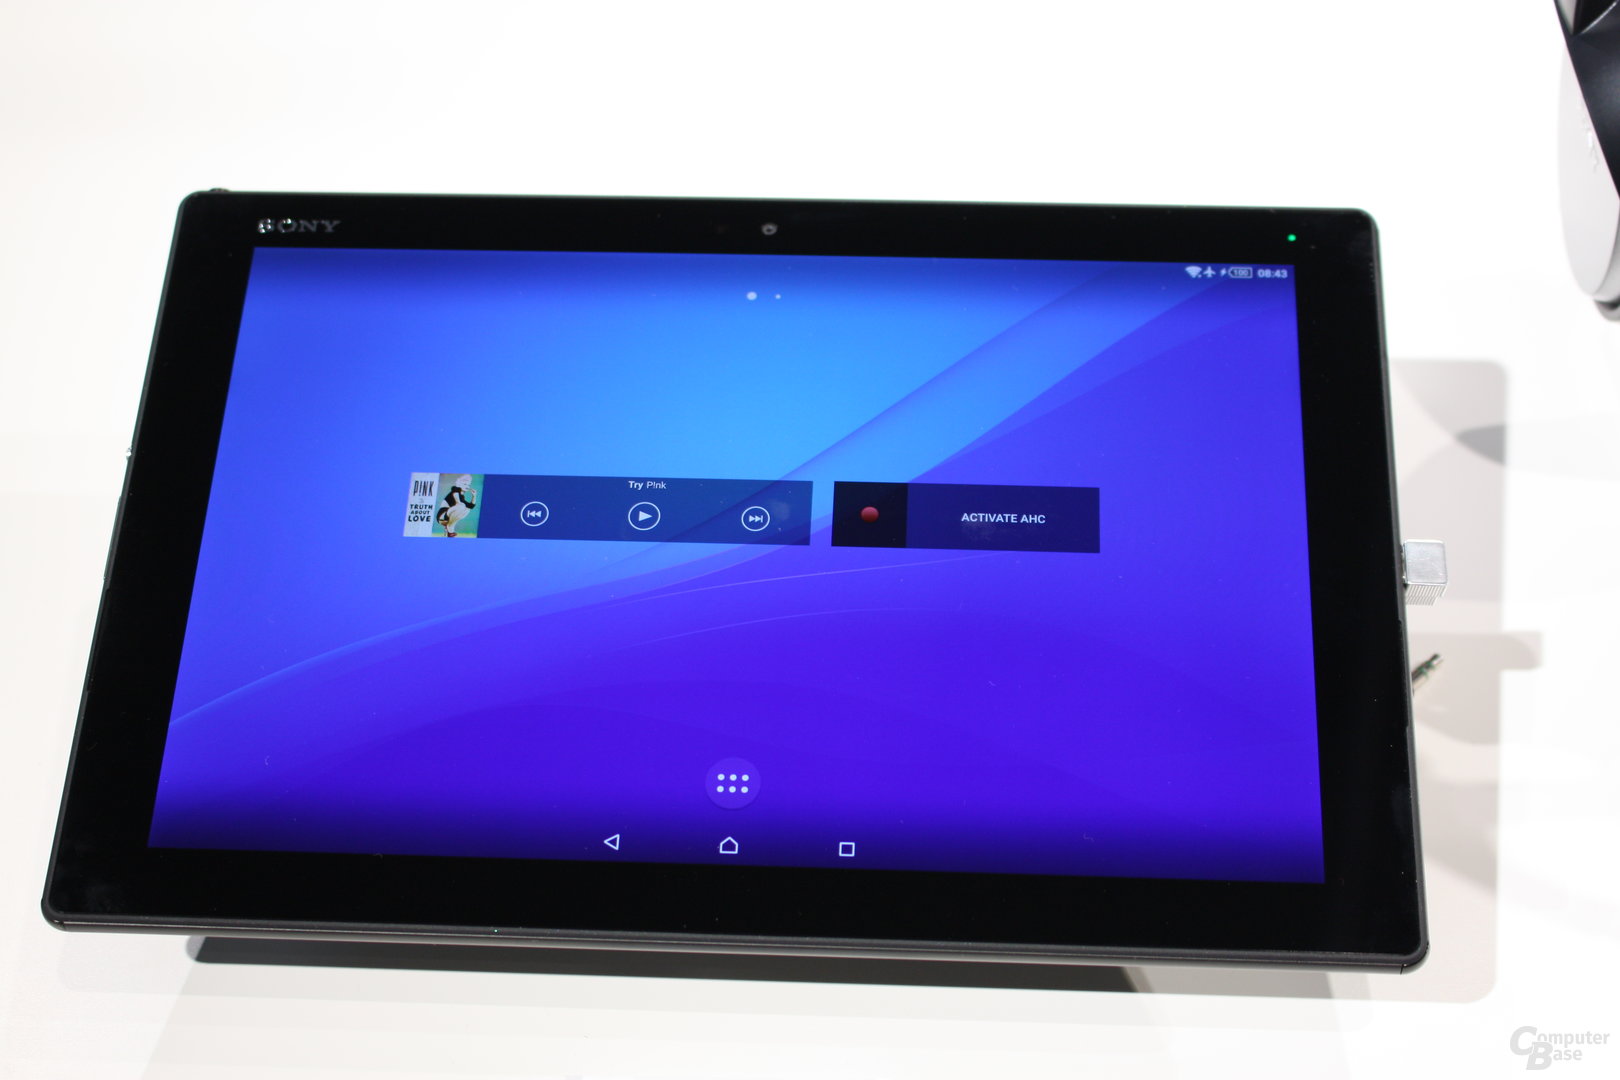 Sony Xperia Z4 Tablet ausprobiert